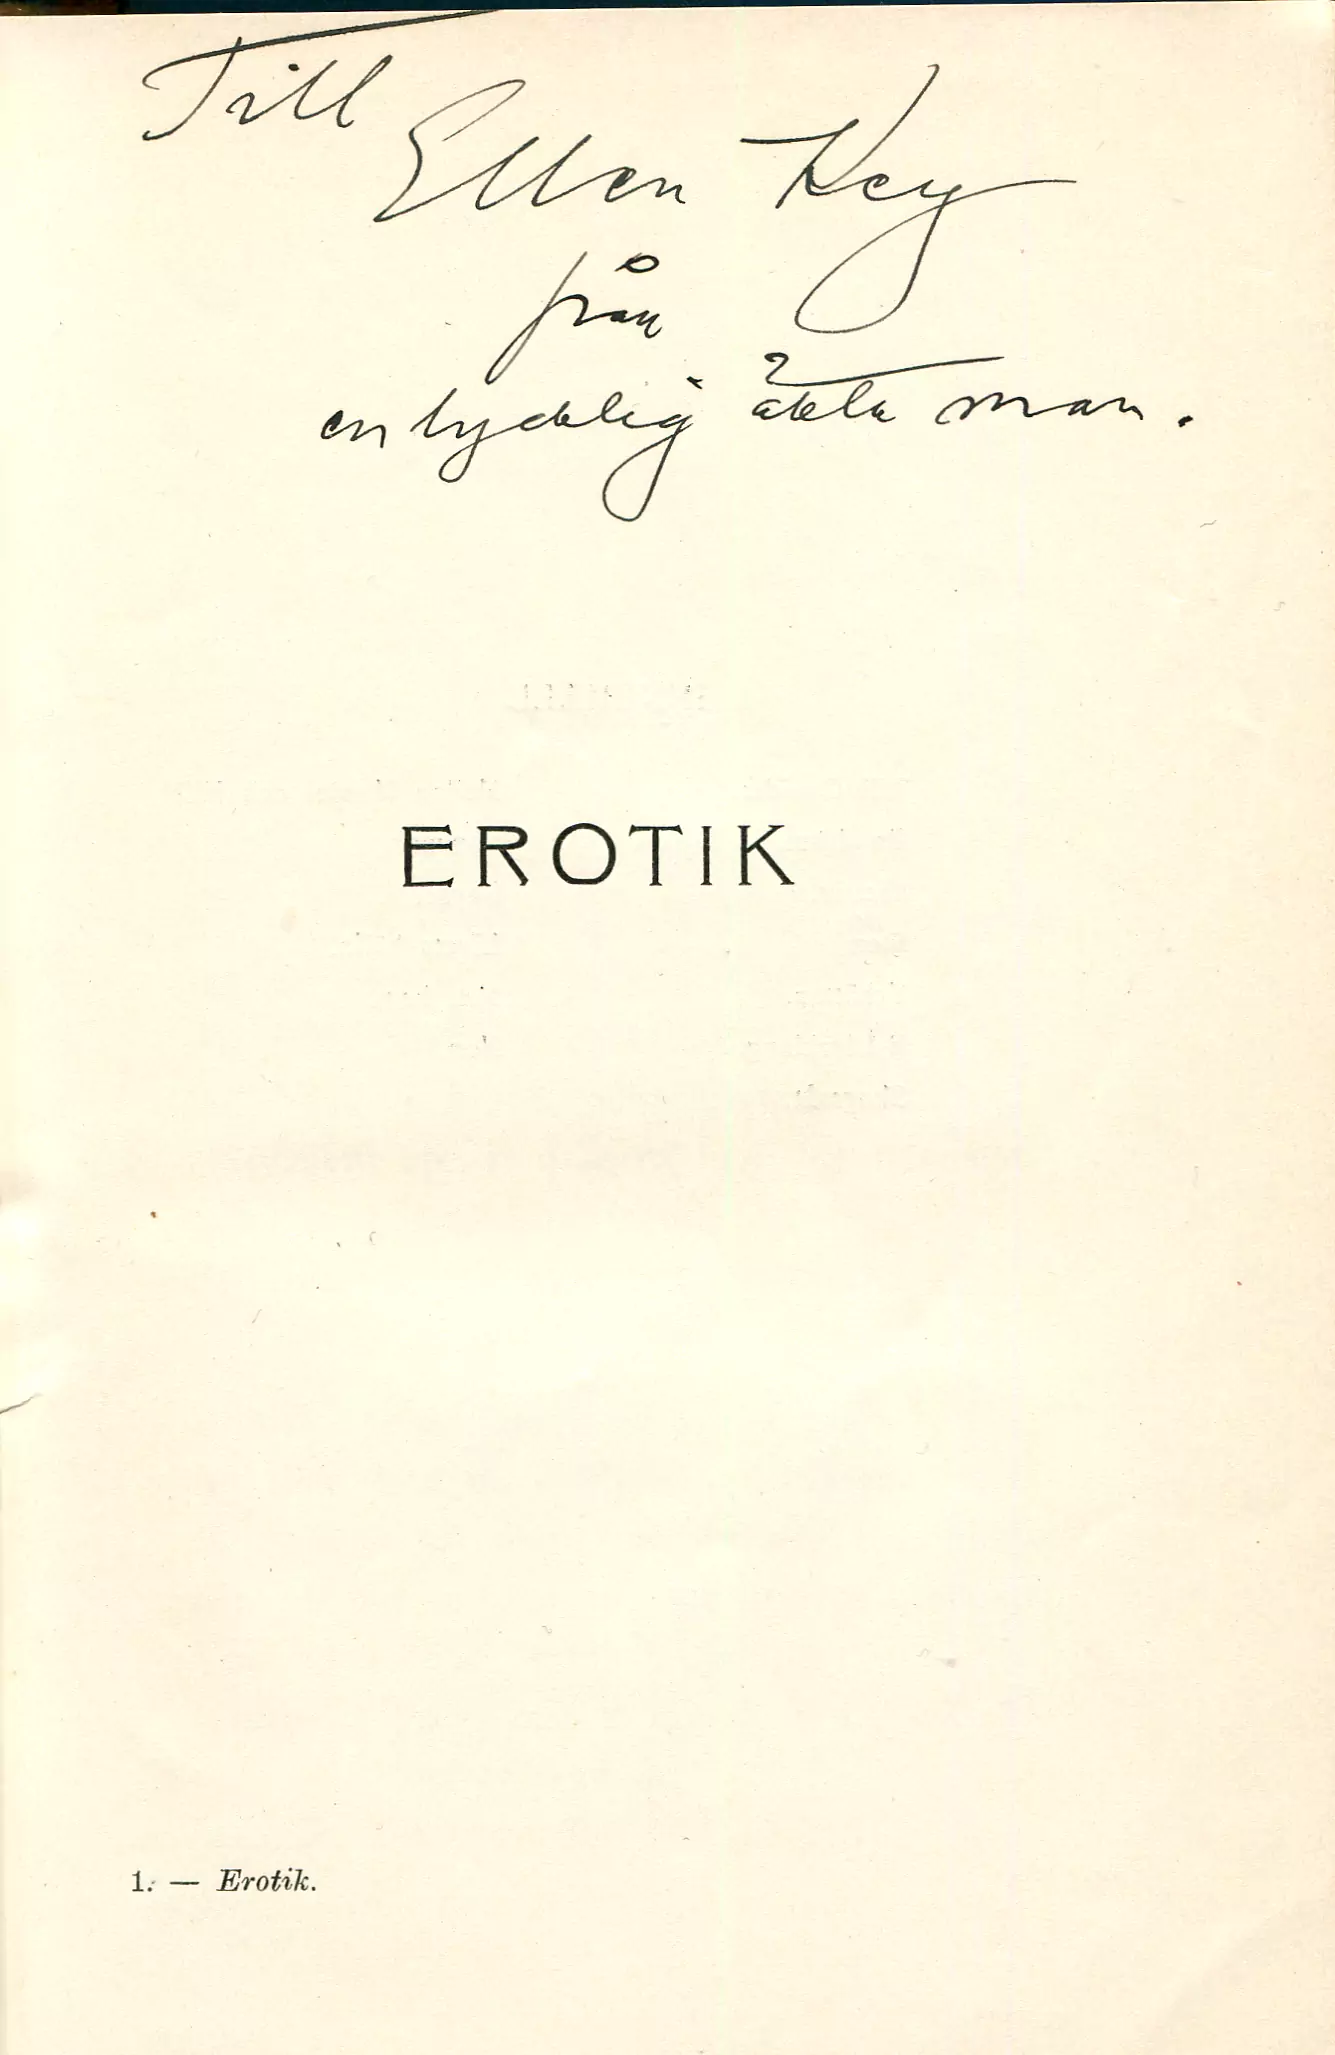 [Samlade dikter 6] Erotik, Stockholm 1907